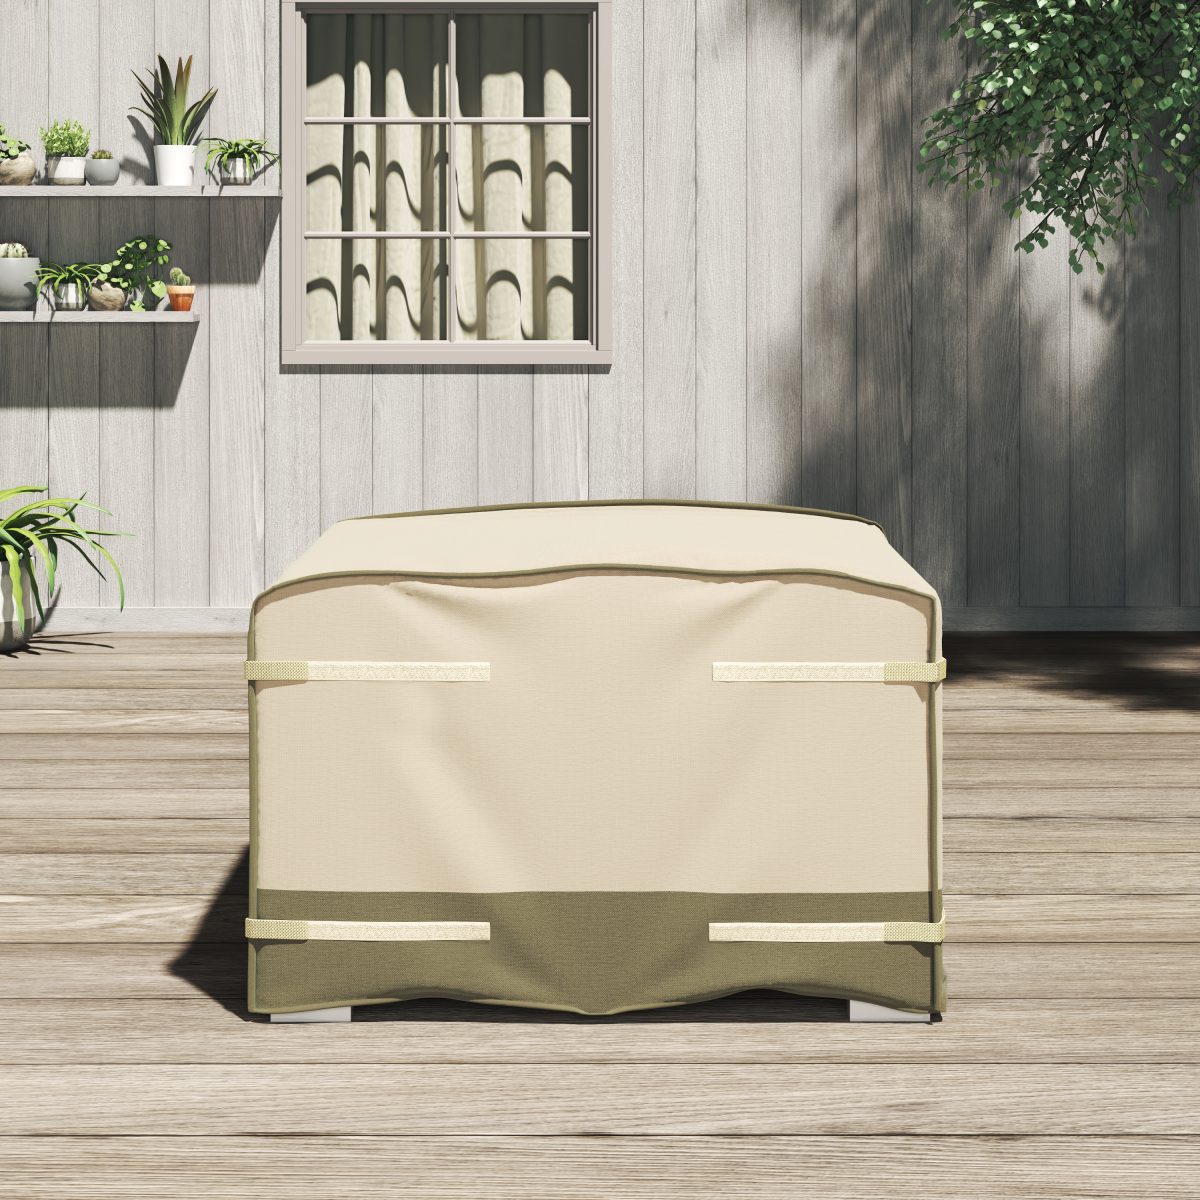 Sirio 42" x 42" Multi-purpose Cover for Outdoor Furniture